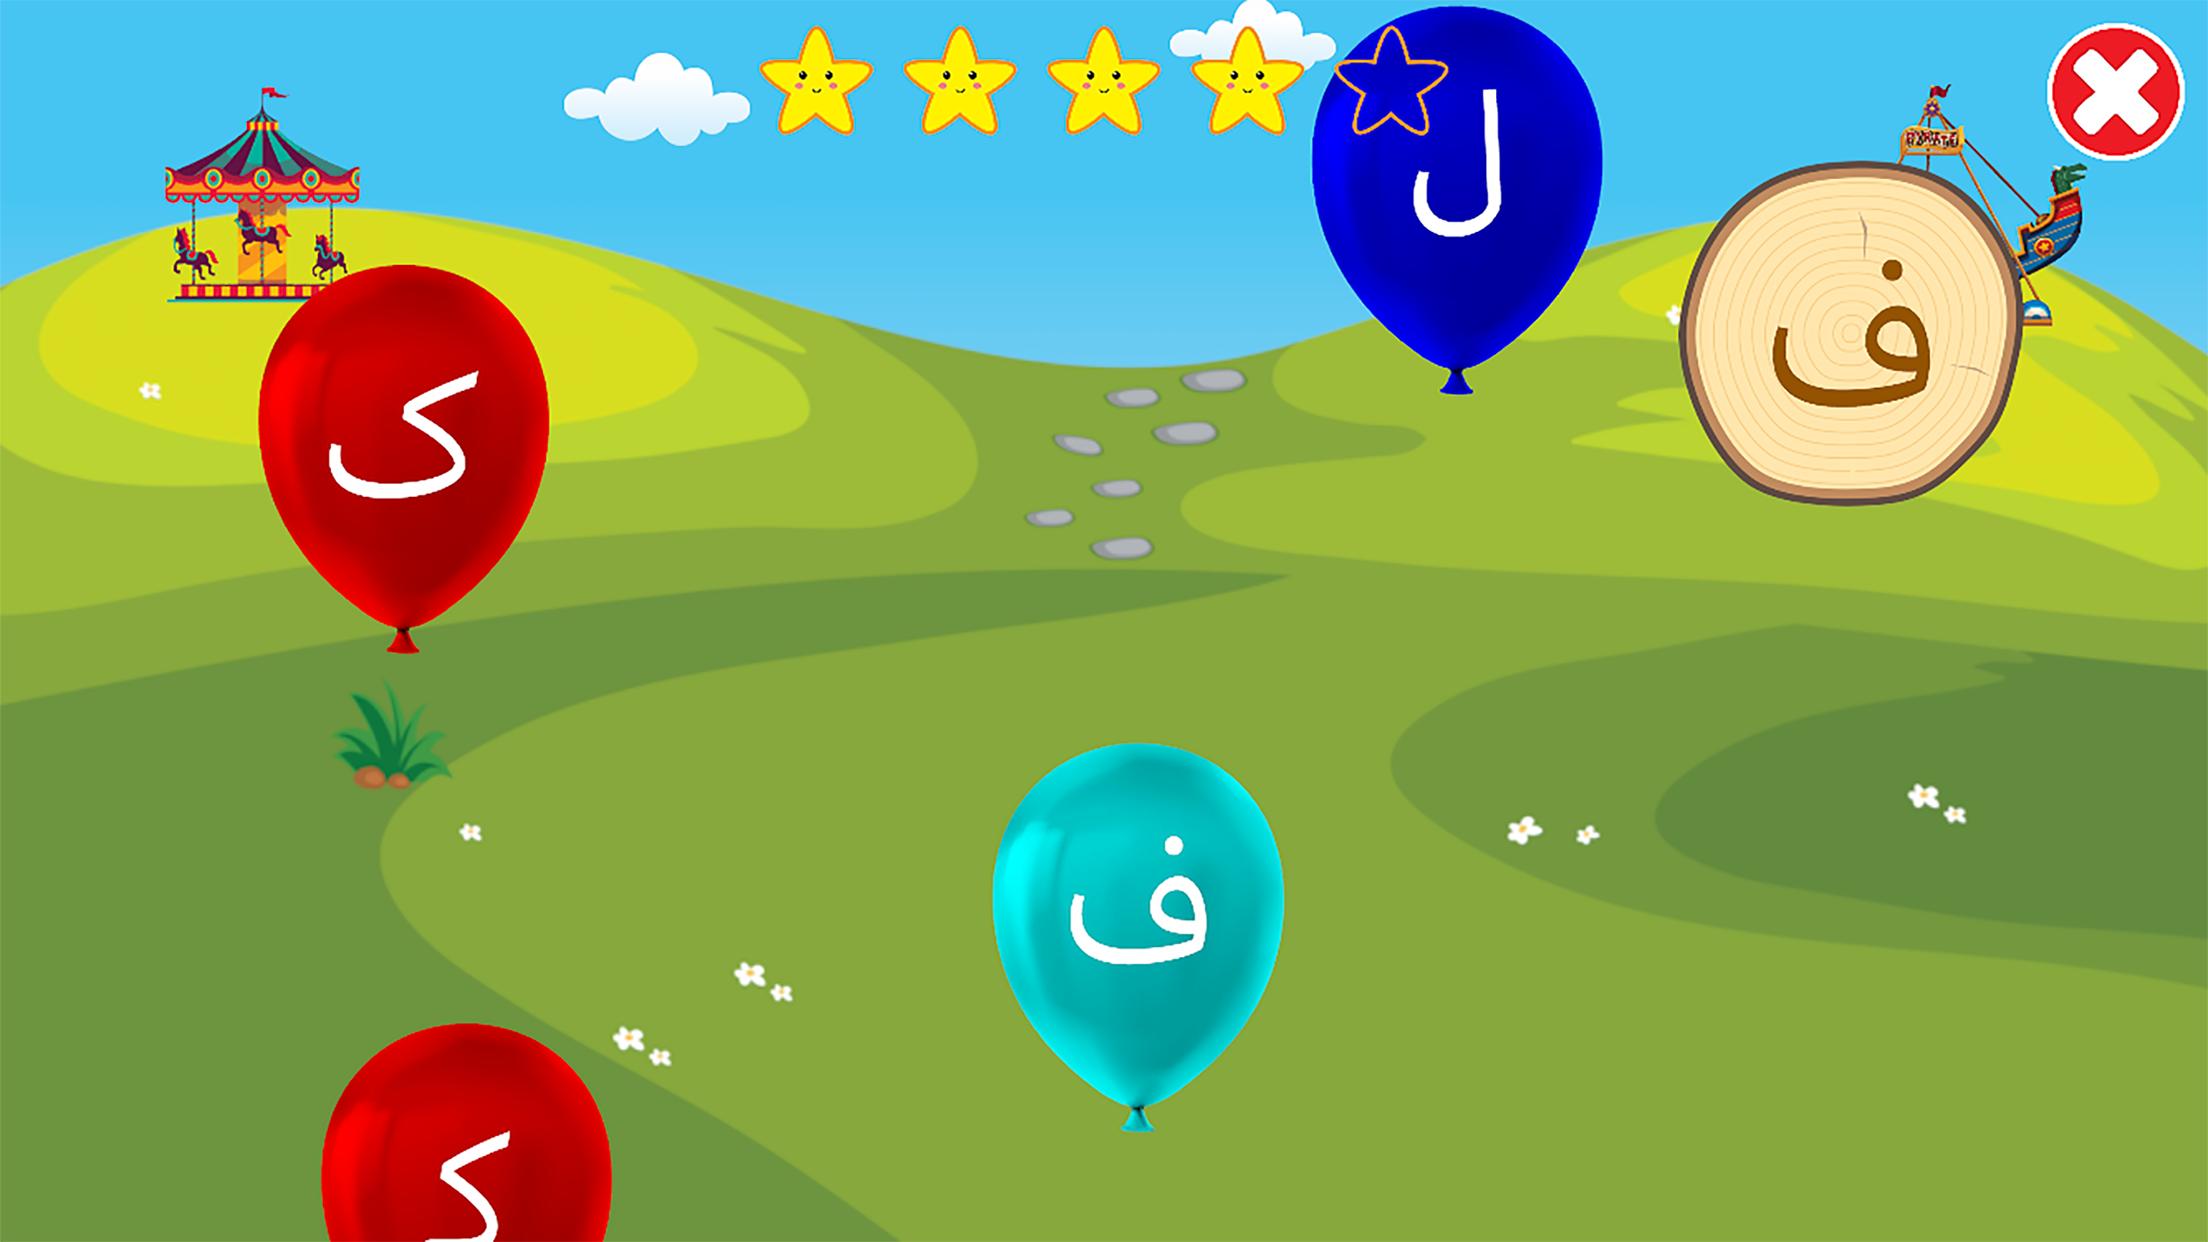 الفبای فارسی کودکان (Farsi alphabet game) 1.11.2 Screenshot 7